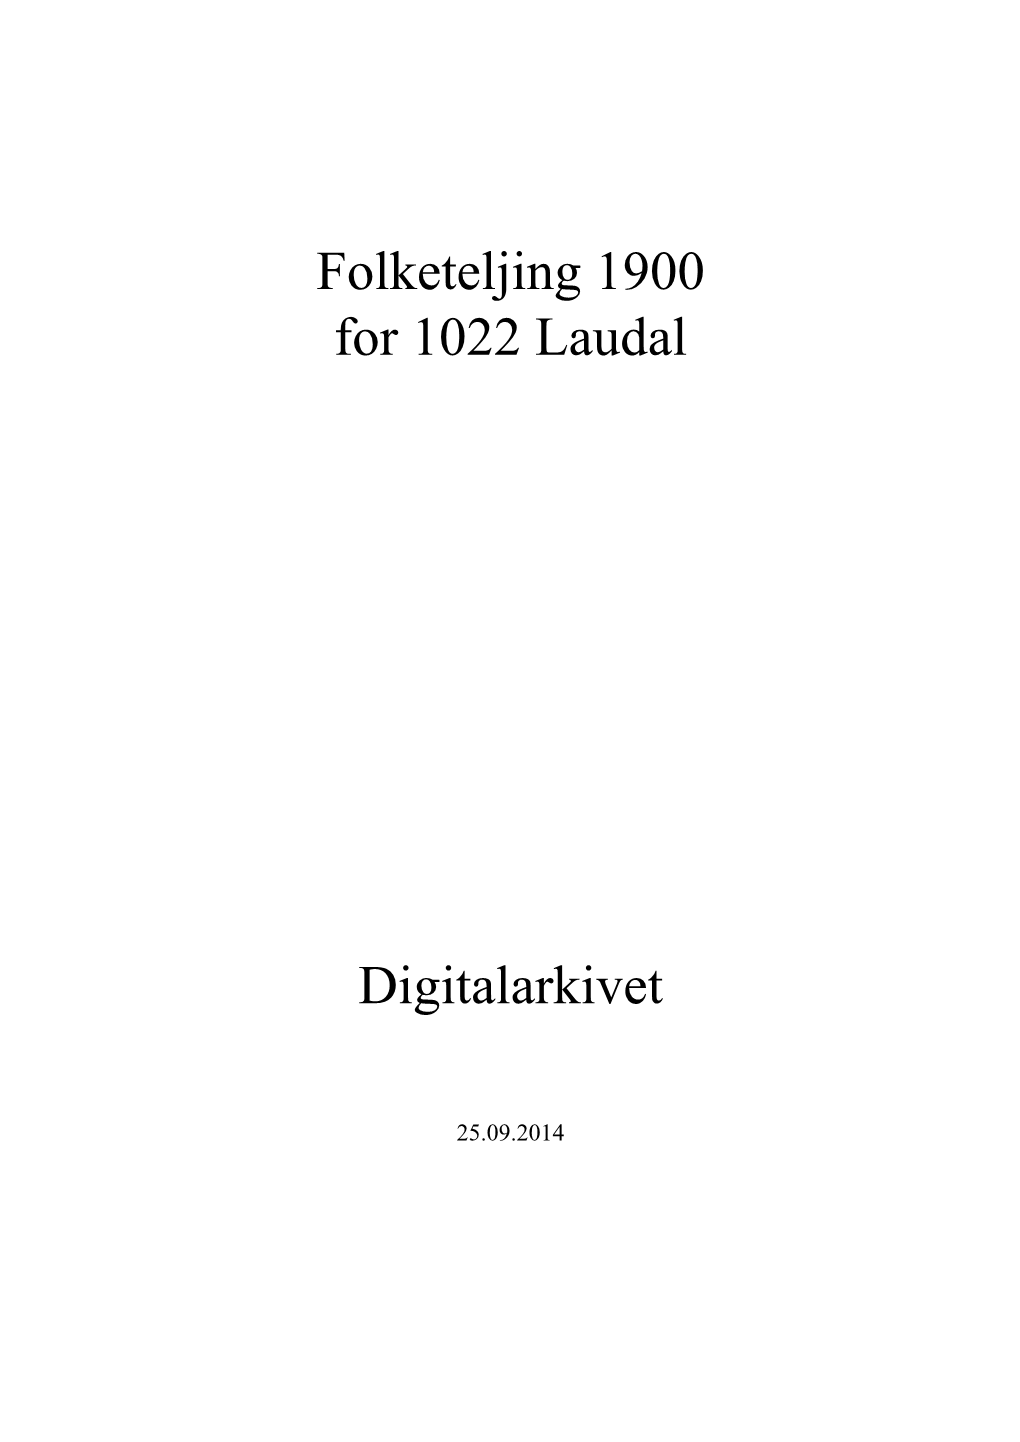 Folketeljing 1900 for 1022 Laudal Digitalarkivet